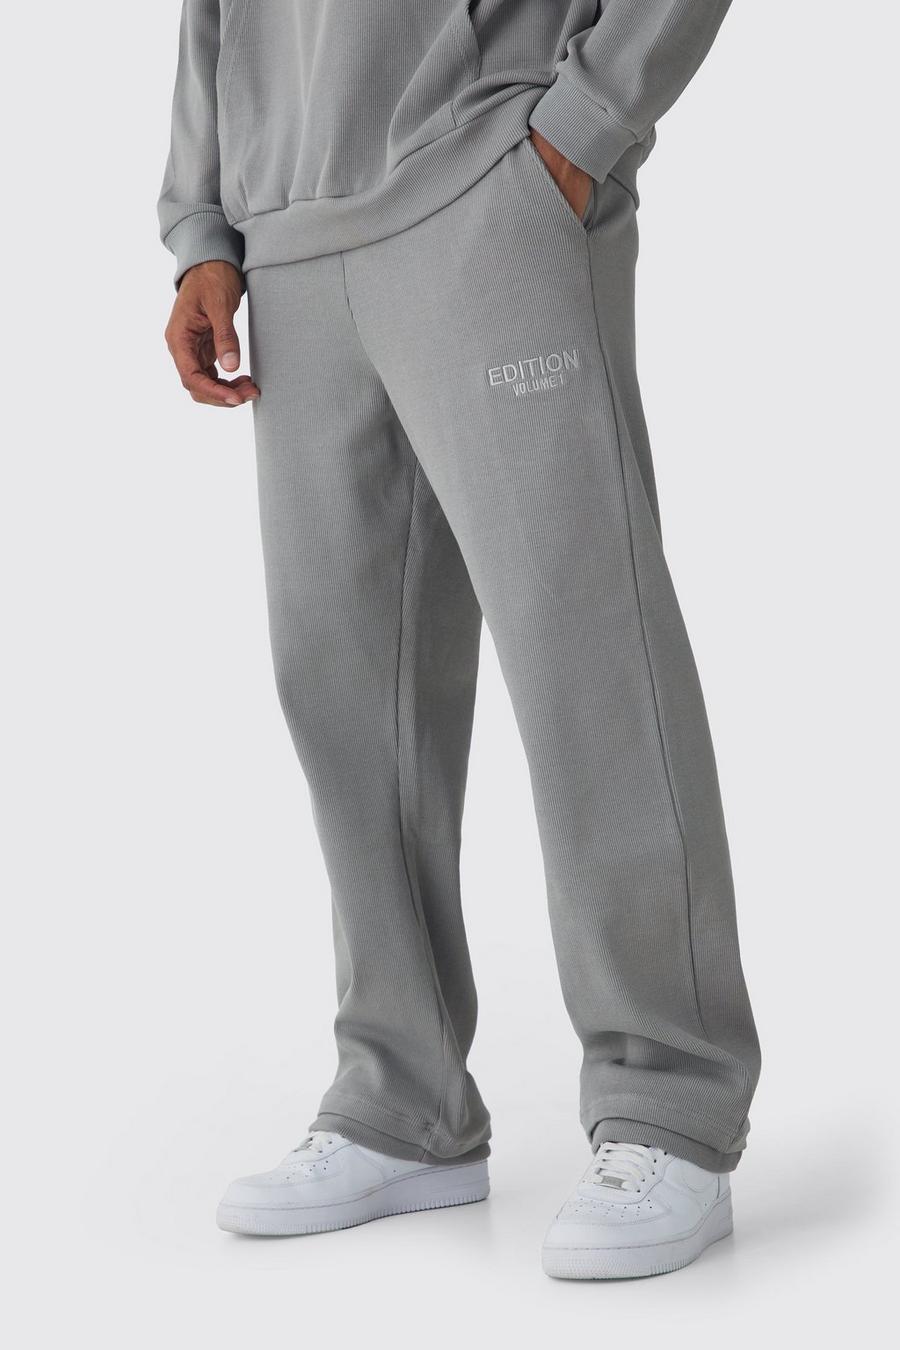 Pantaloni tuta EDITION pesanti dritti a coste con spacco sul fondo, Grey